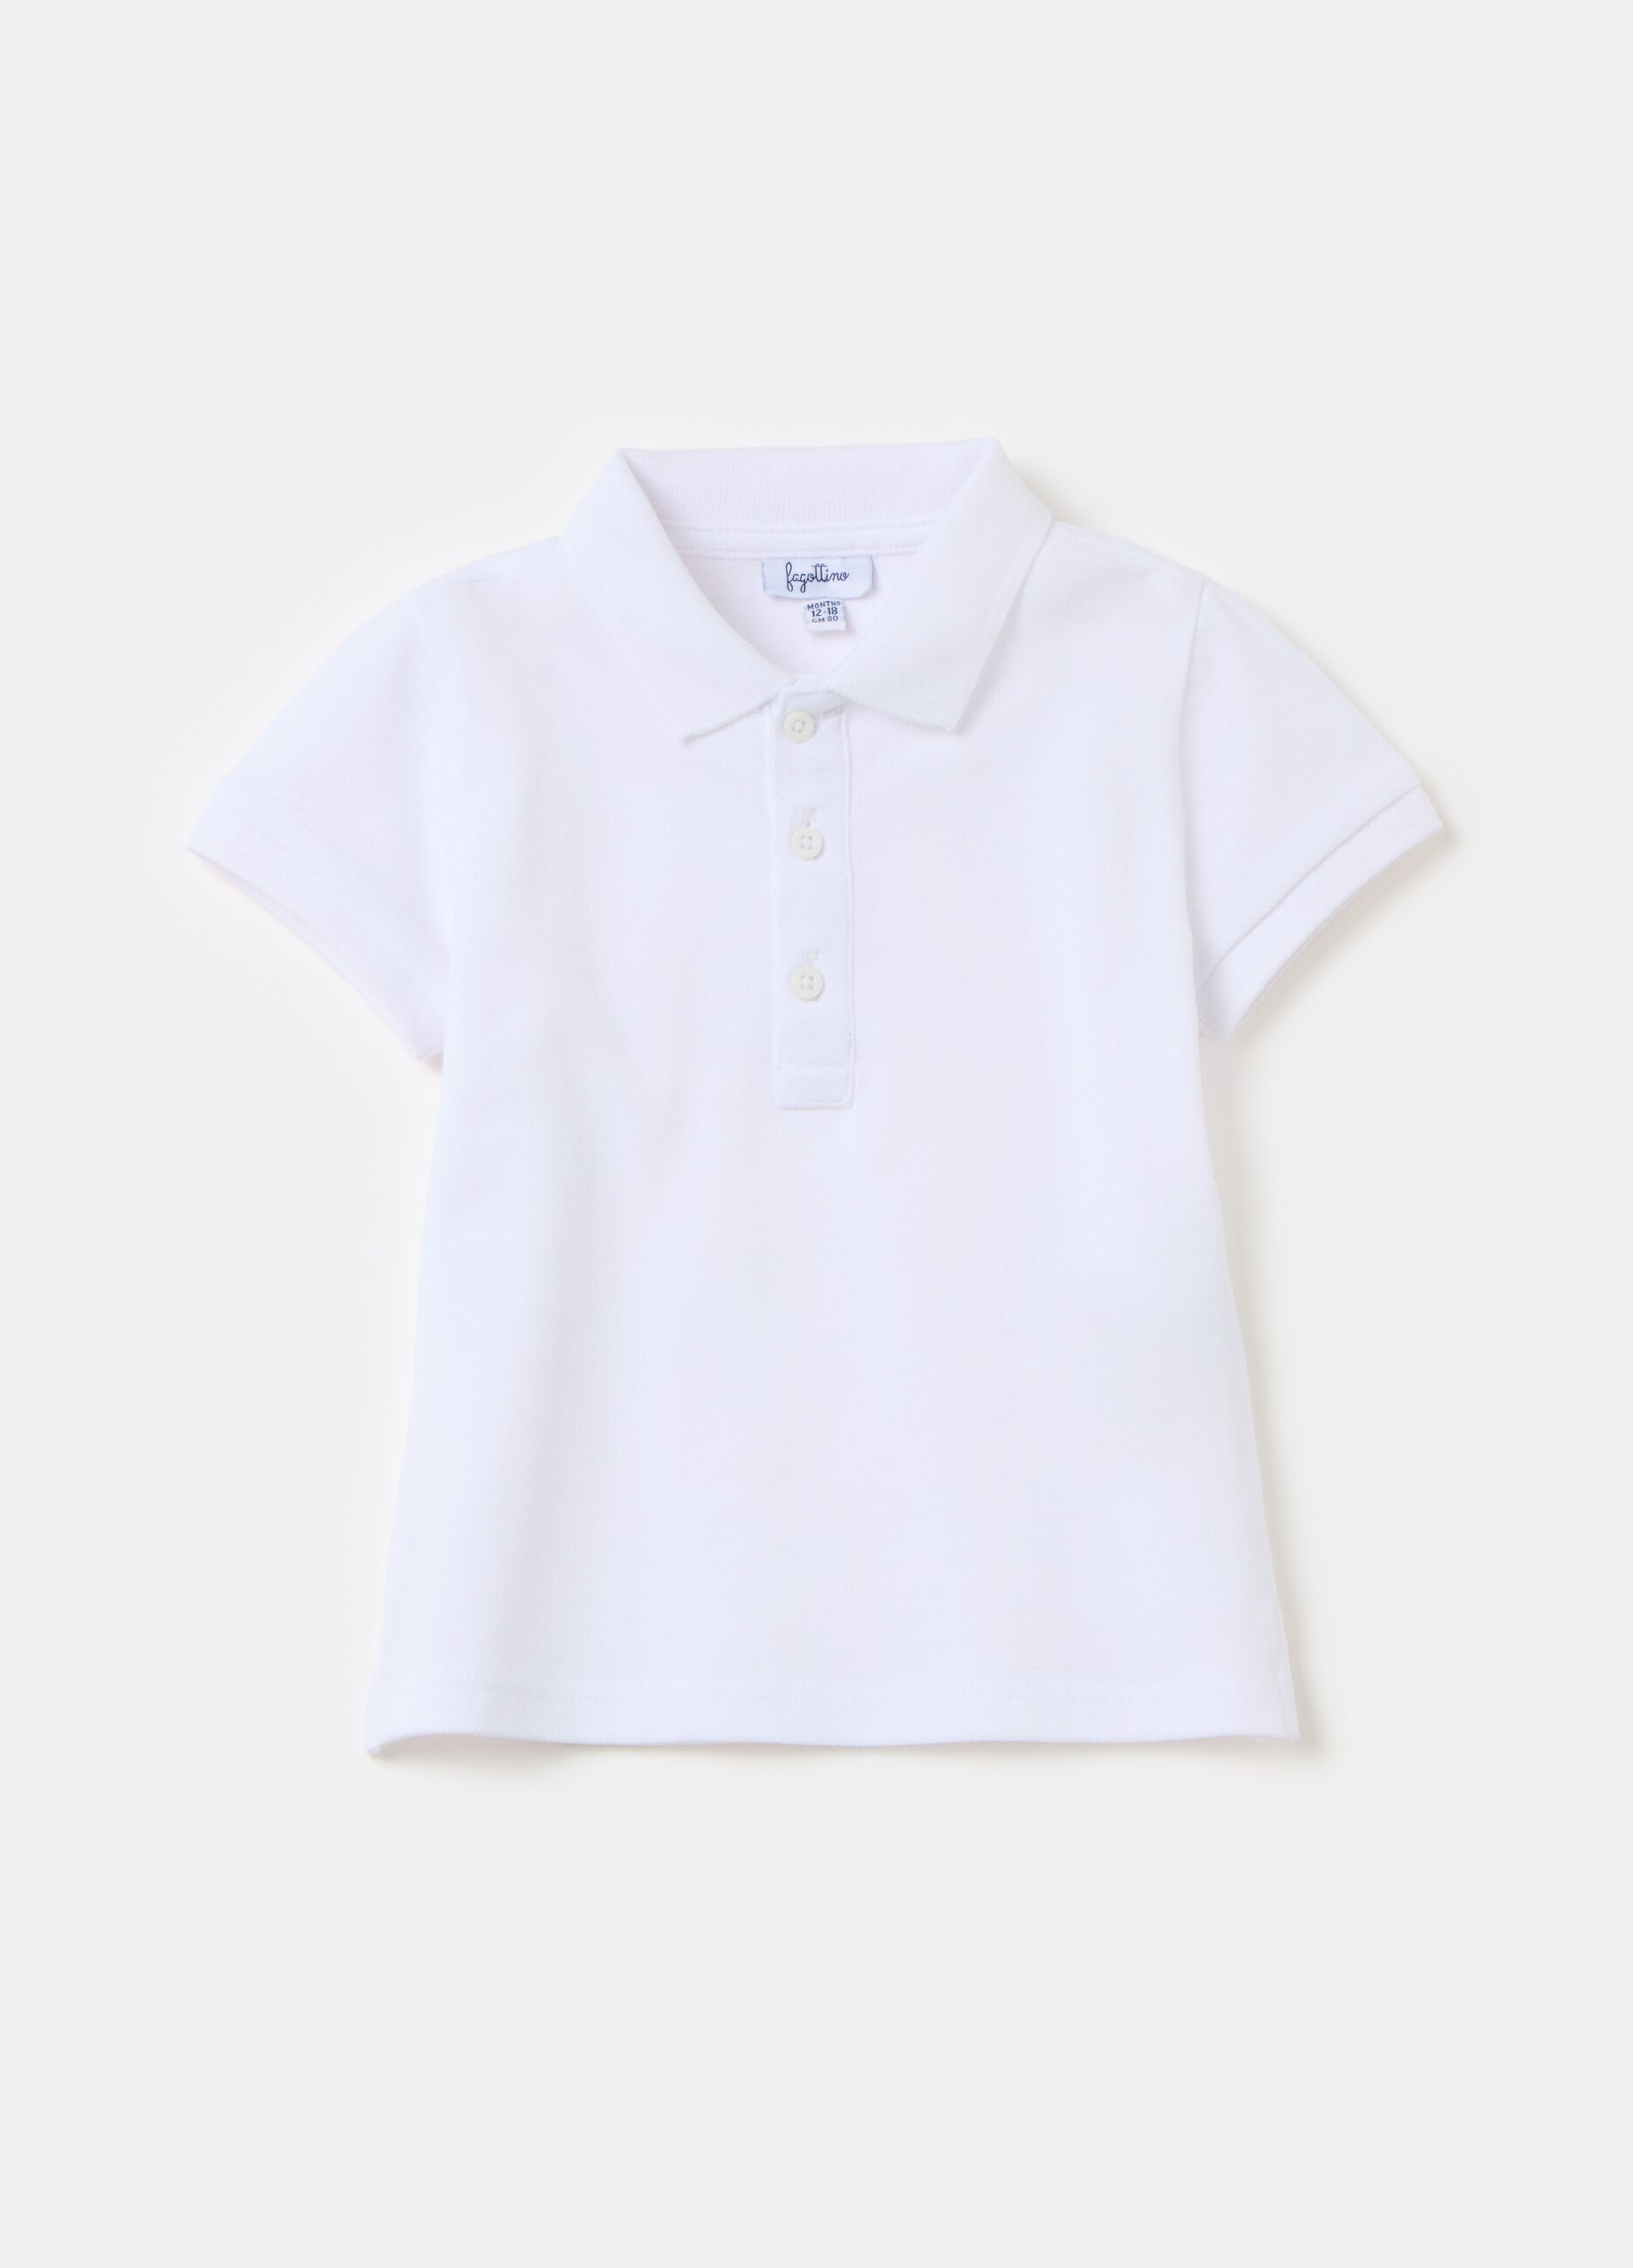 Polo shirt in cotton pique